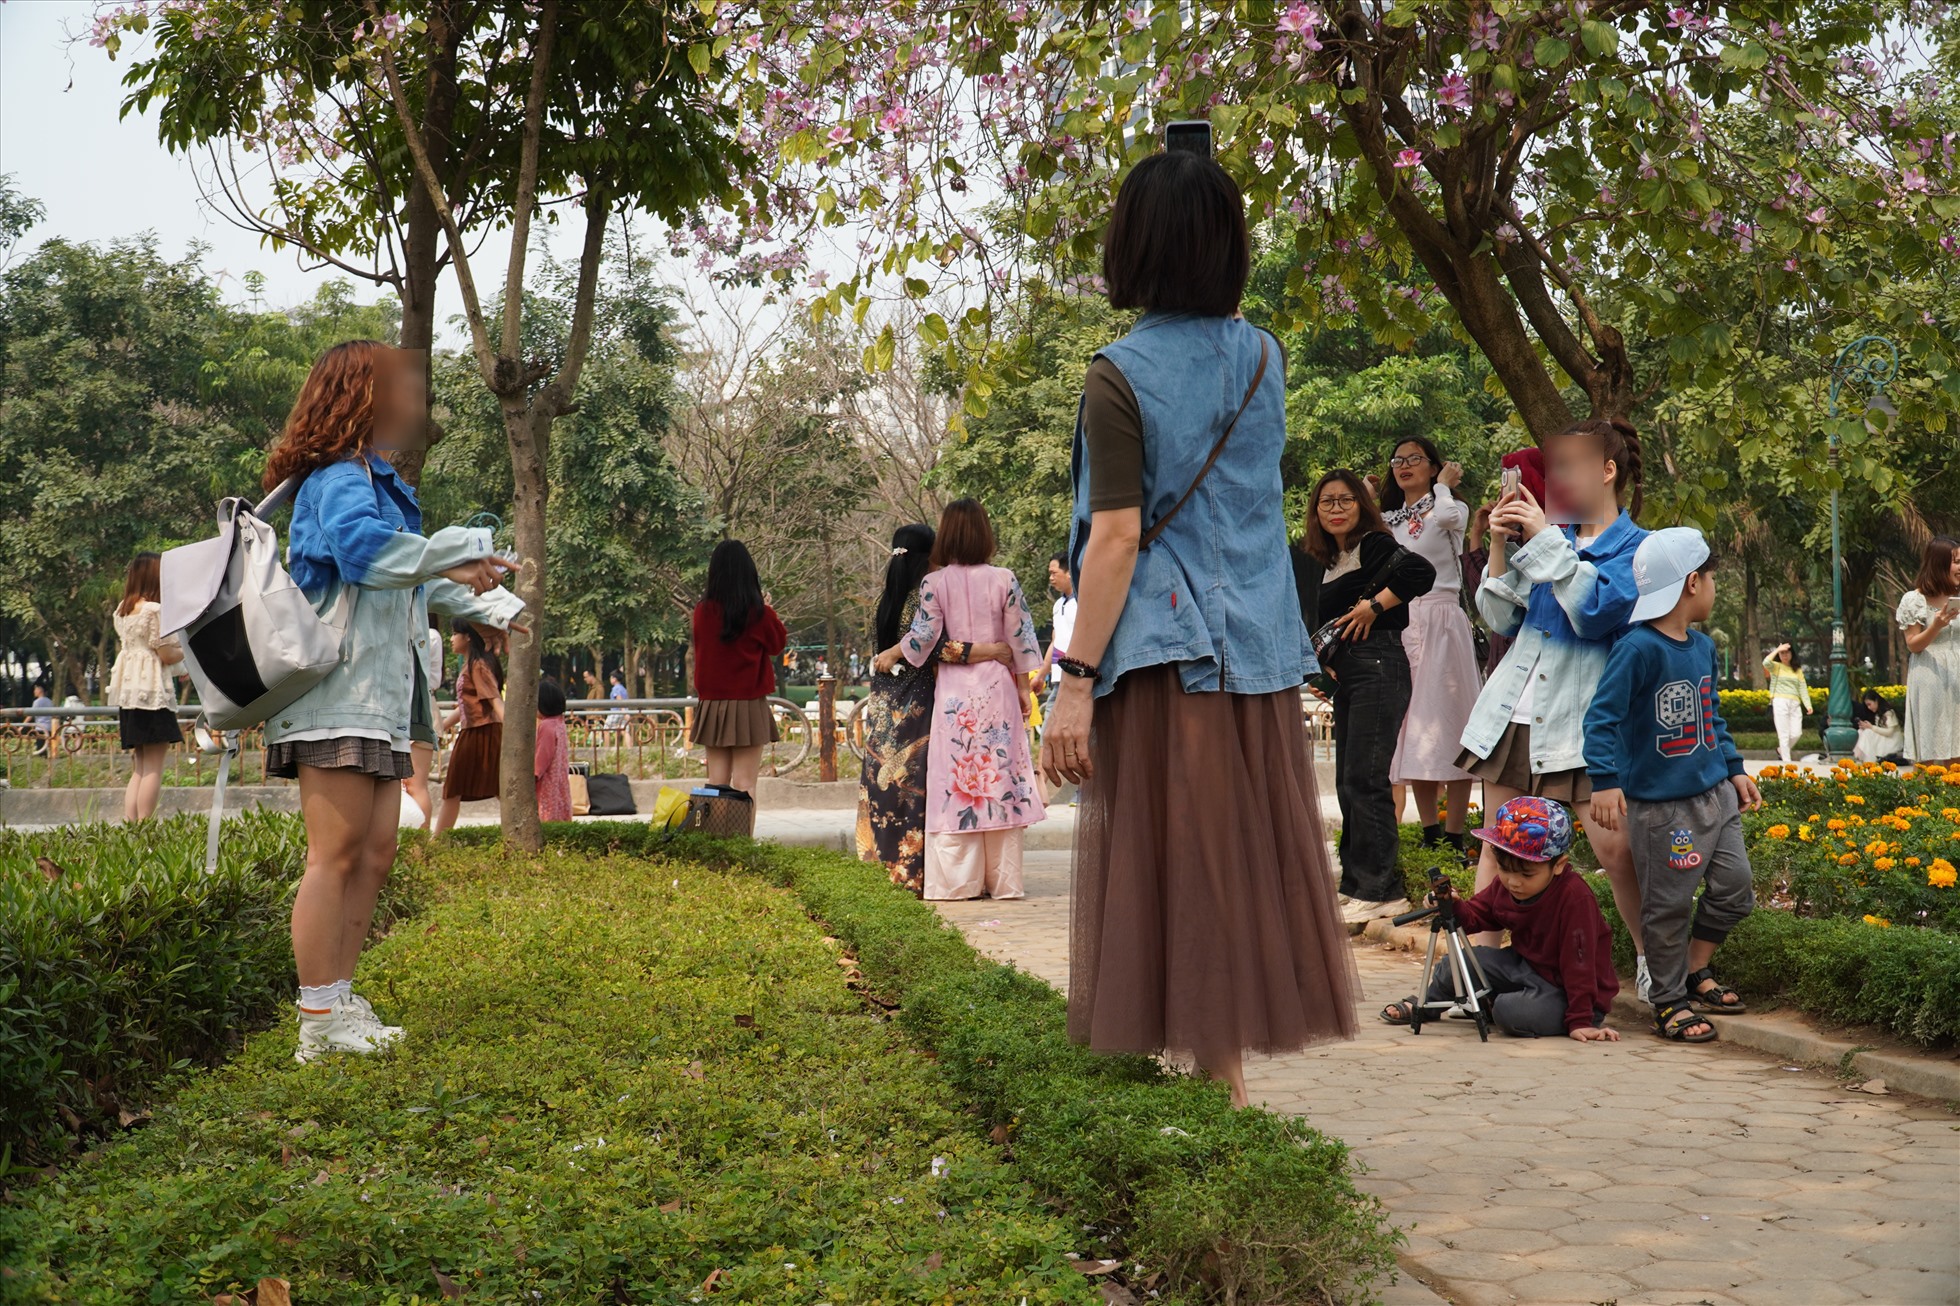 Phía trong công viên, nhiều người dân ngang nhiên đứng trong bồn cây, vườn hoa, dẫm chân lên các bãi cỏ để chụp ảnh.